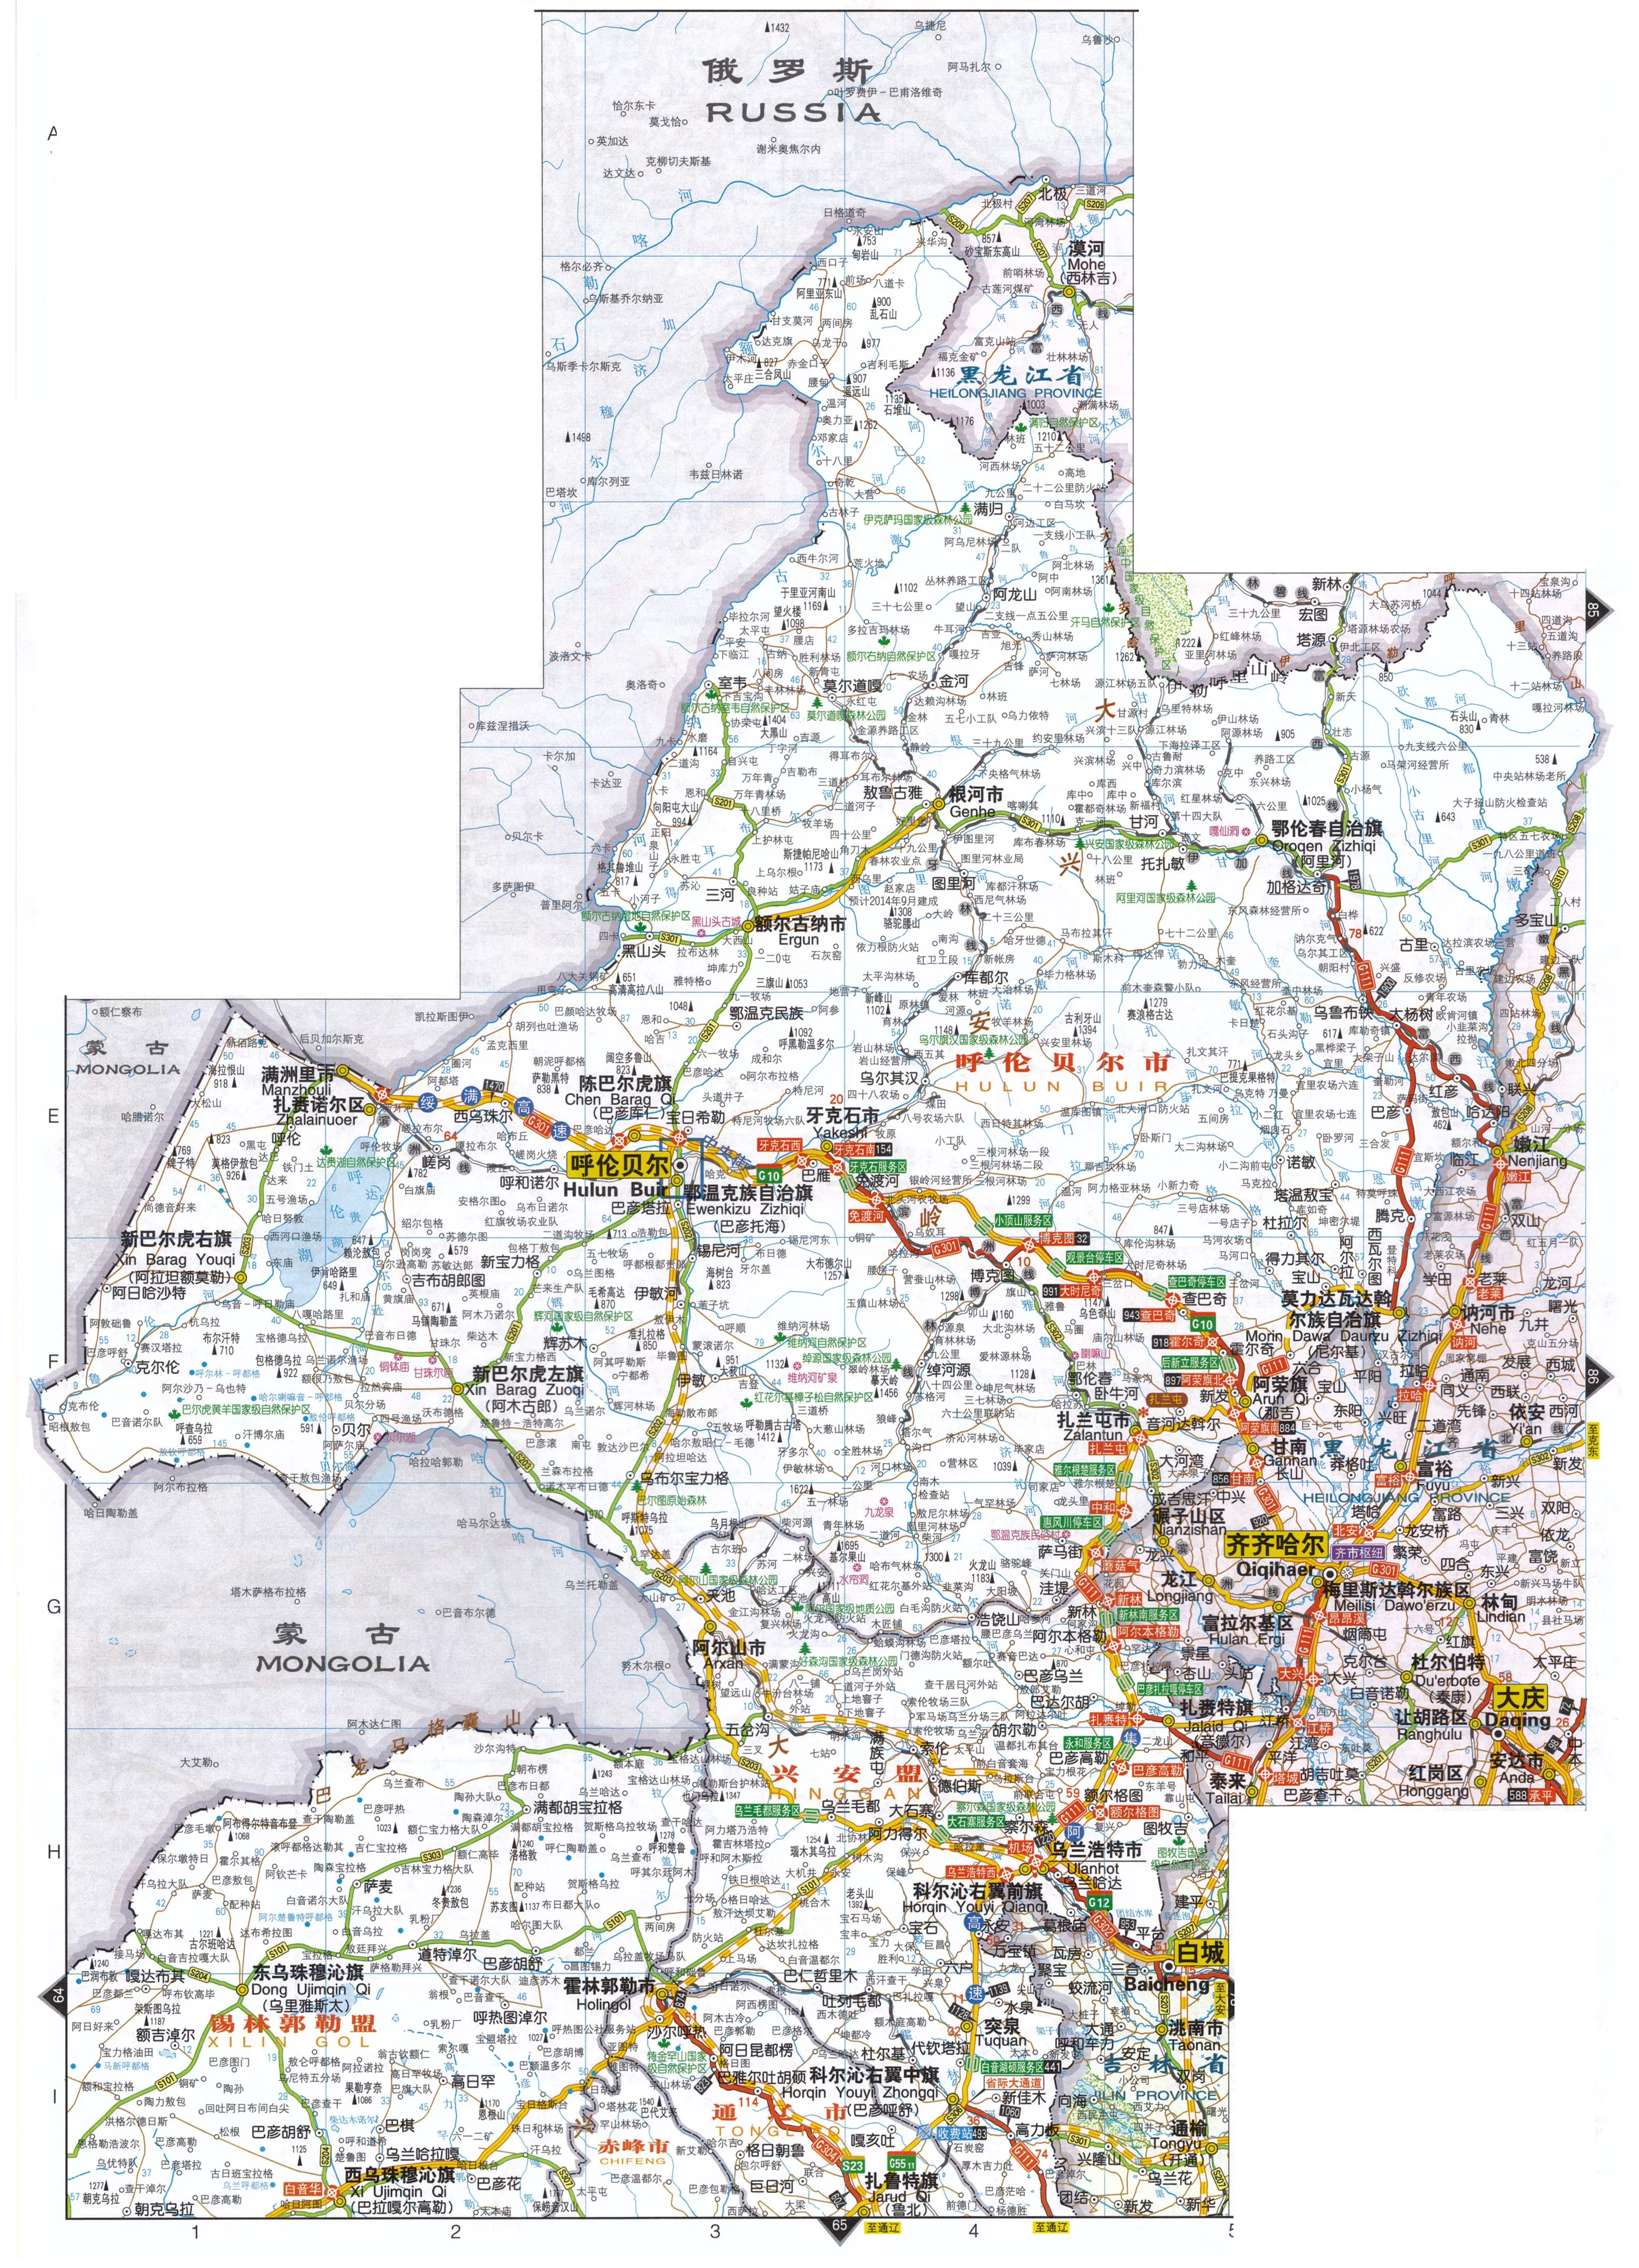 内蒙古自治区东北部交通图 中国交通地图 地理教师网